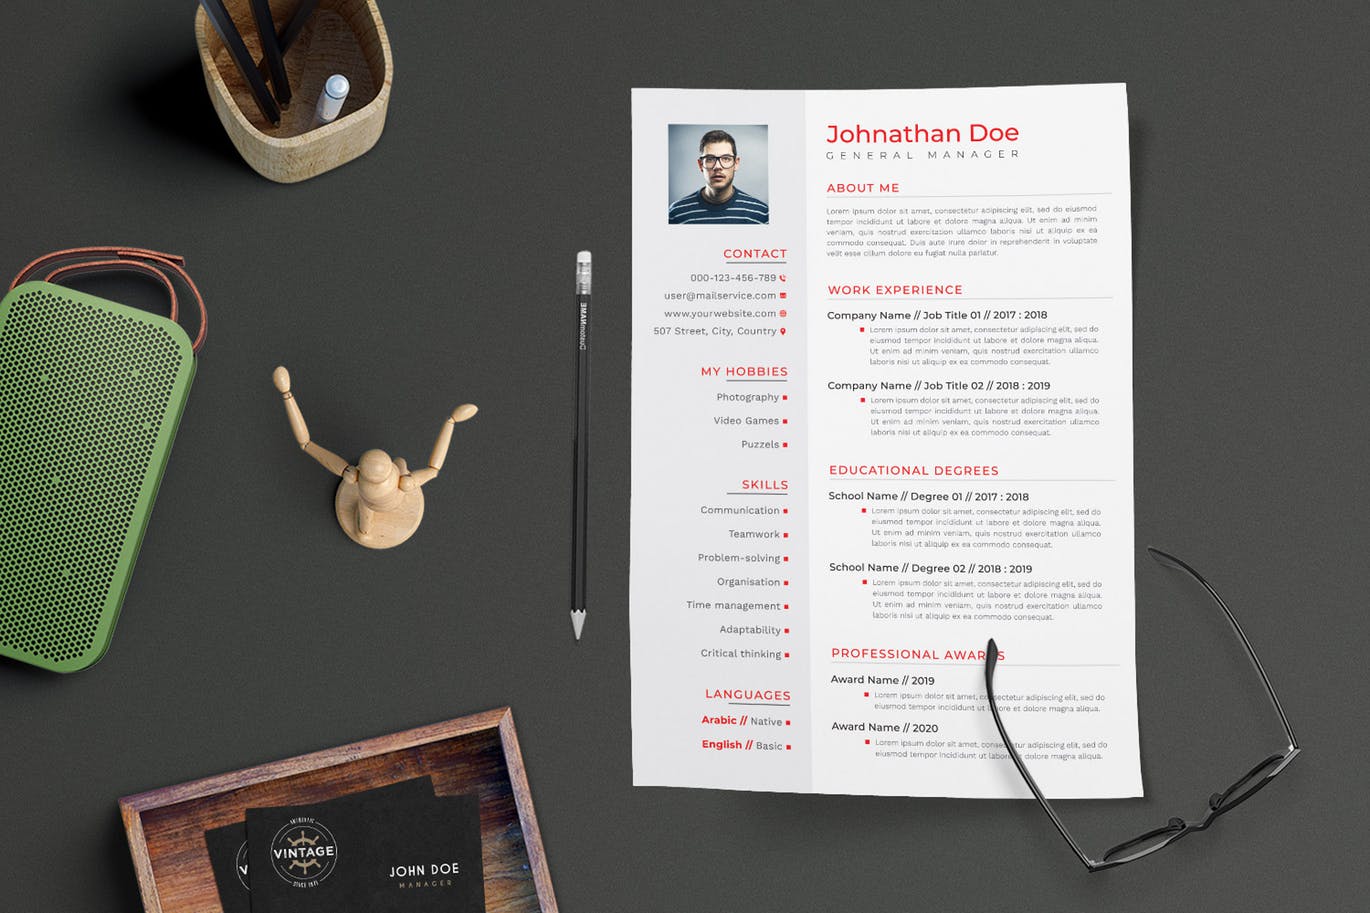 项目管理经理个人电子第一素材精选简历模板 CV Resume插图(2)